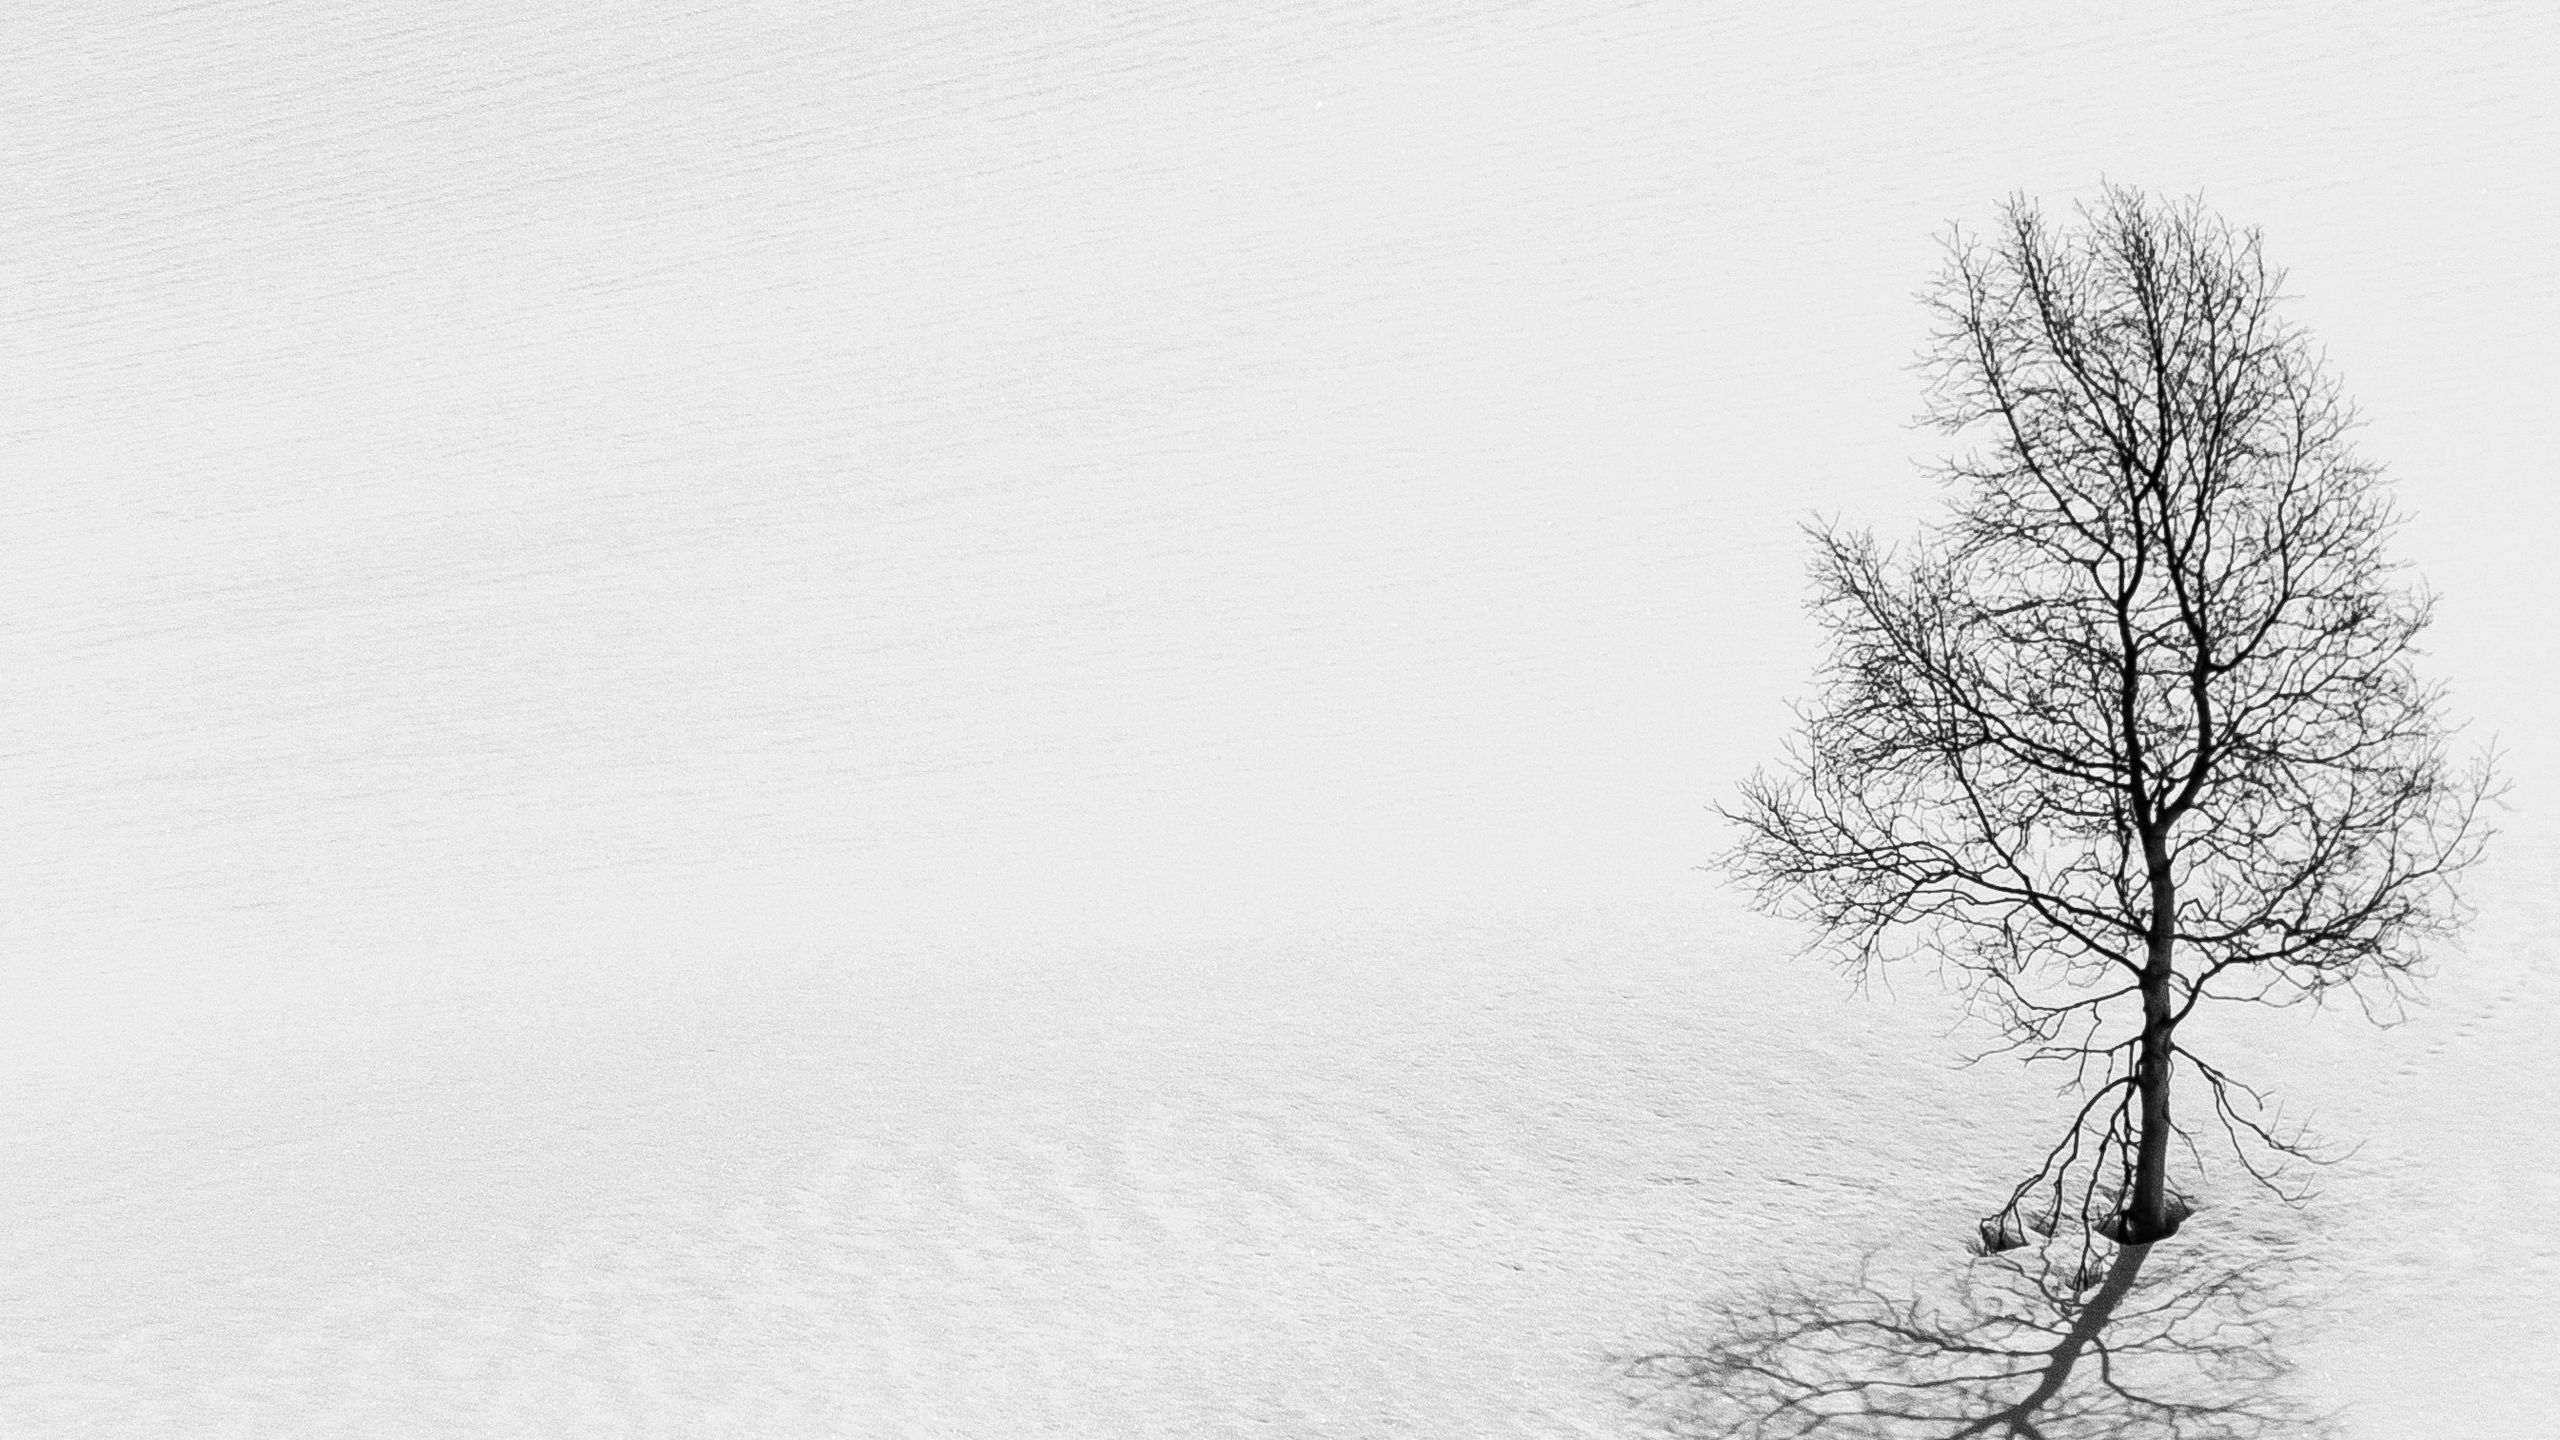 Wallpaper cây tuyết mùa đông đen trắng 2560x1440 sẽ khiến bạn càng thêm yêu quý mùa đông và tận hưởng những khoảnh khắc lãng mạn và đầy phấn khích. Với hình ảnh lung linh và độc đáo này, bạn sẽ có một màn hình đẹp và chứa đựng nhiều cảm xúc. Hãy cùng tận hưởng không khí của mùa đông qua hình ảnh đẹp này.